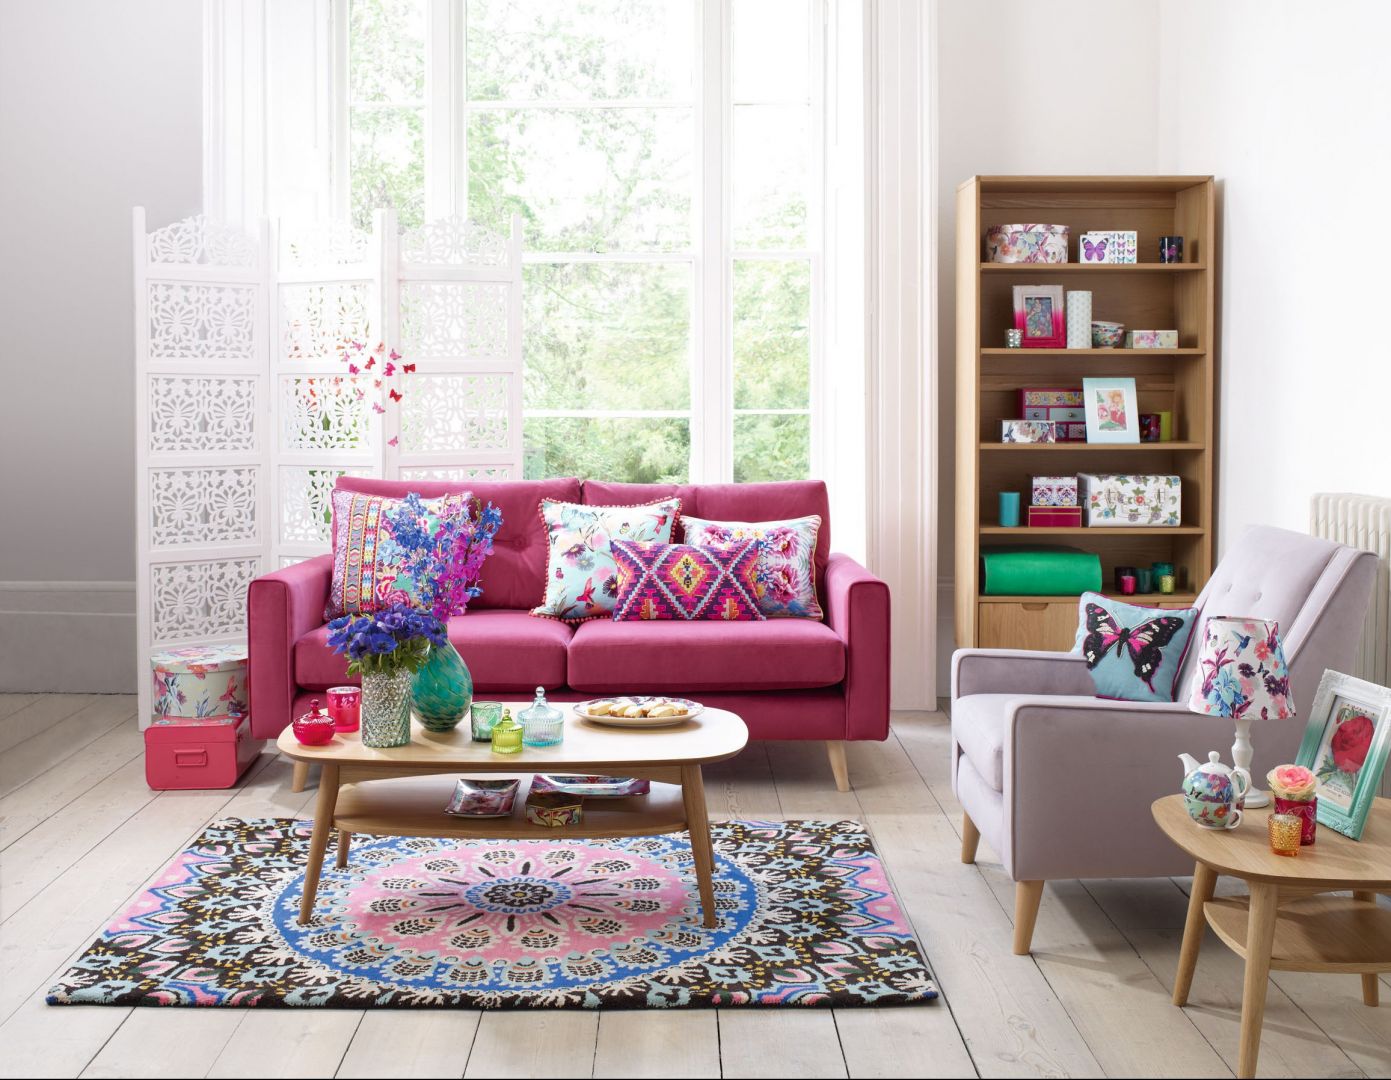 Duży pokój w mieszkaniu lubi zdecydowane barwy. Różowa sofa doskonale współgra z etnicznymi wzorami poduszek i dywanu. Fot. Debenhams